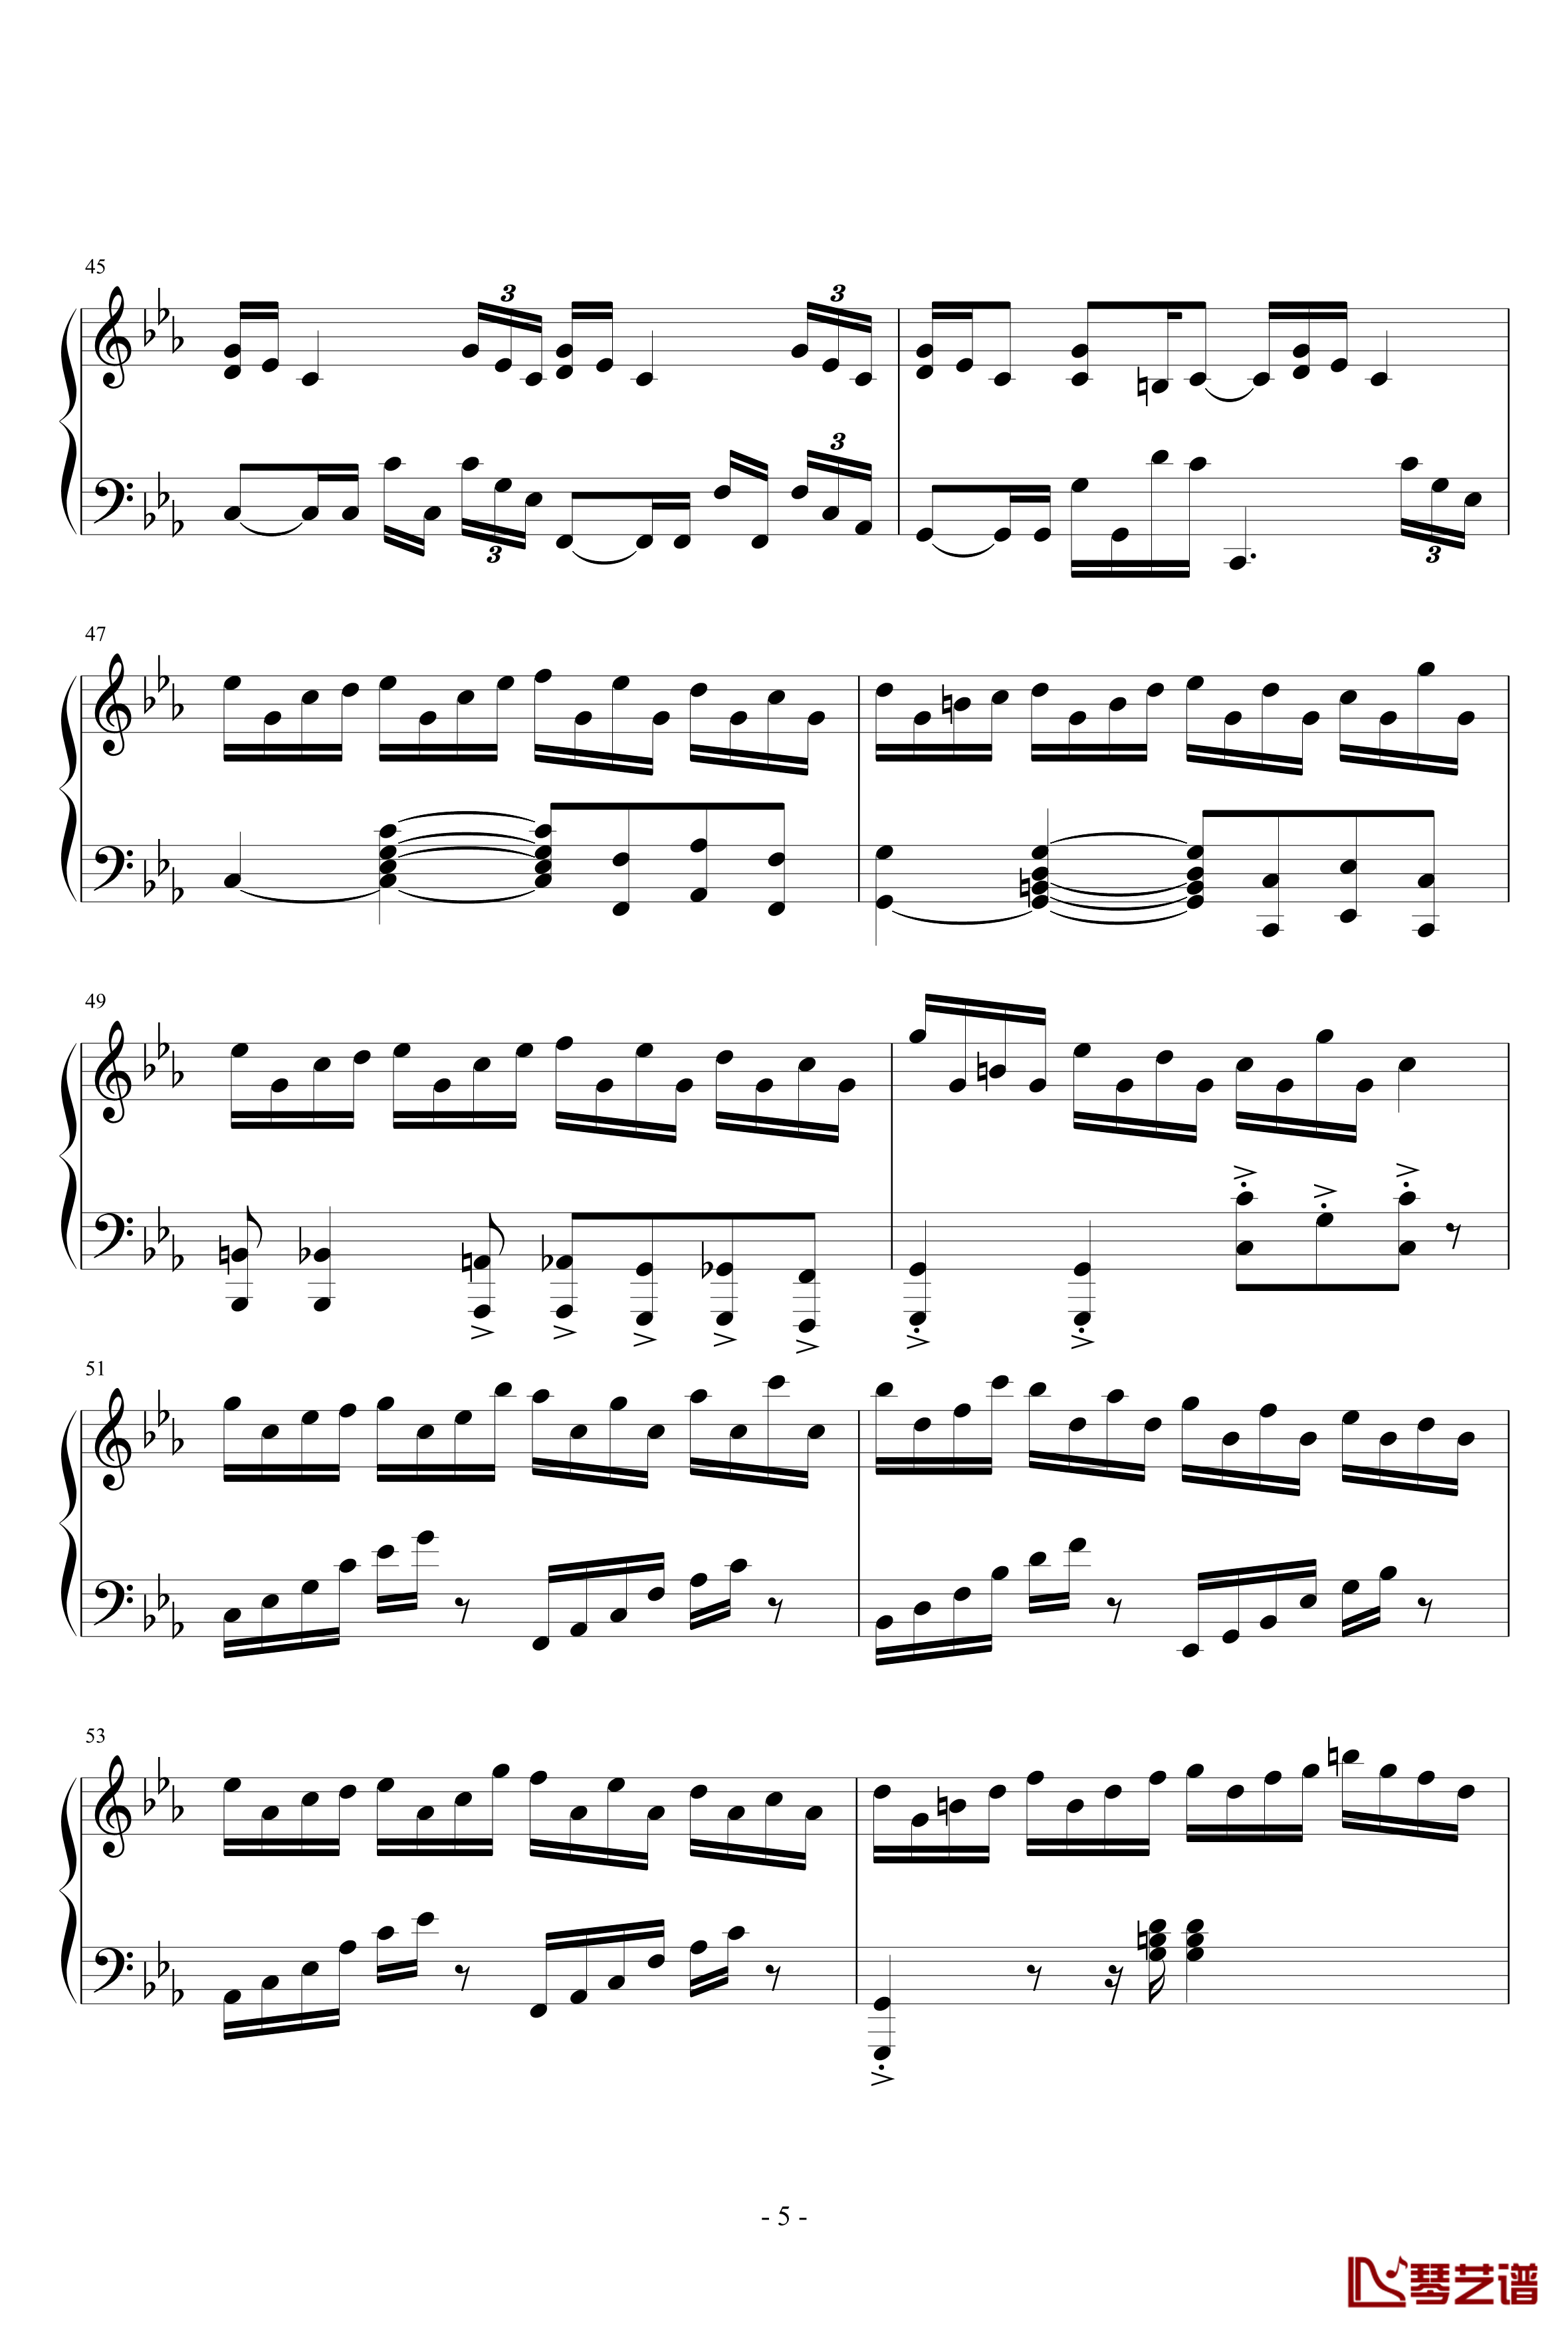 克罗地亚狂想曲钢琴谱-天津演奏会原版-马克西姆-Maksim·Mrvica5